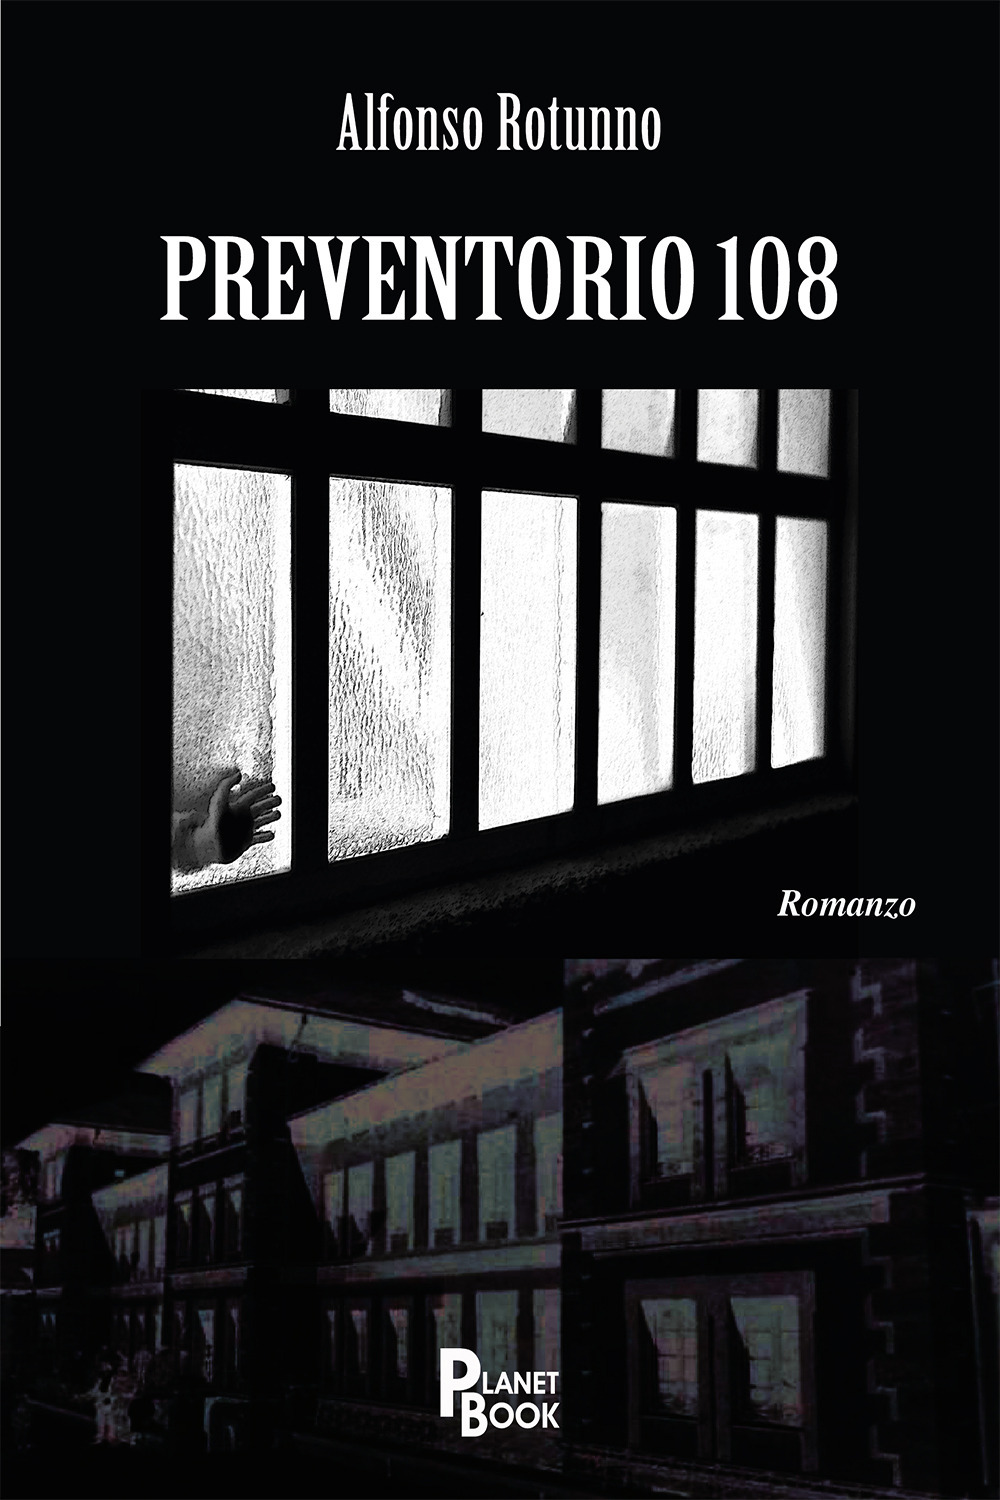 Libri Alfonso Rotunno - Preventorio 108 NUOVO SIGILLATO, EDIZIONE DEL 21/10/2020 SUBITO DISPONIBILE